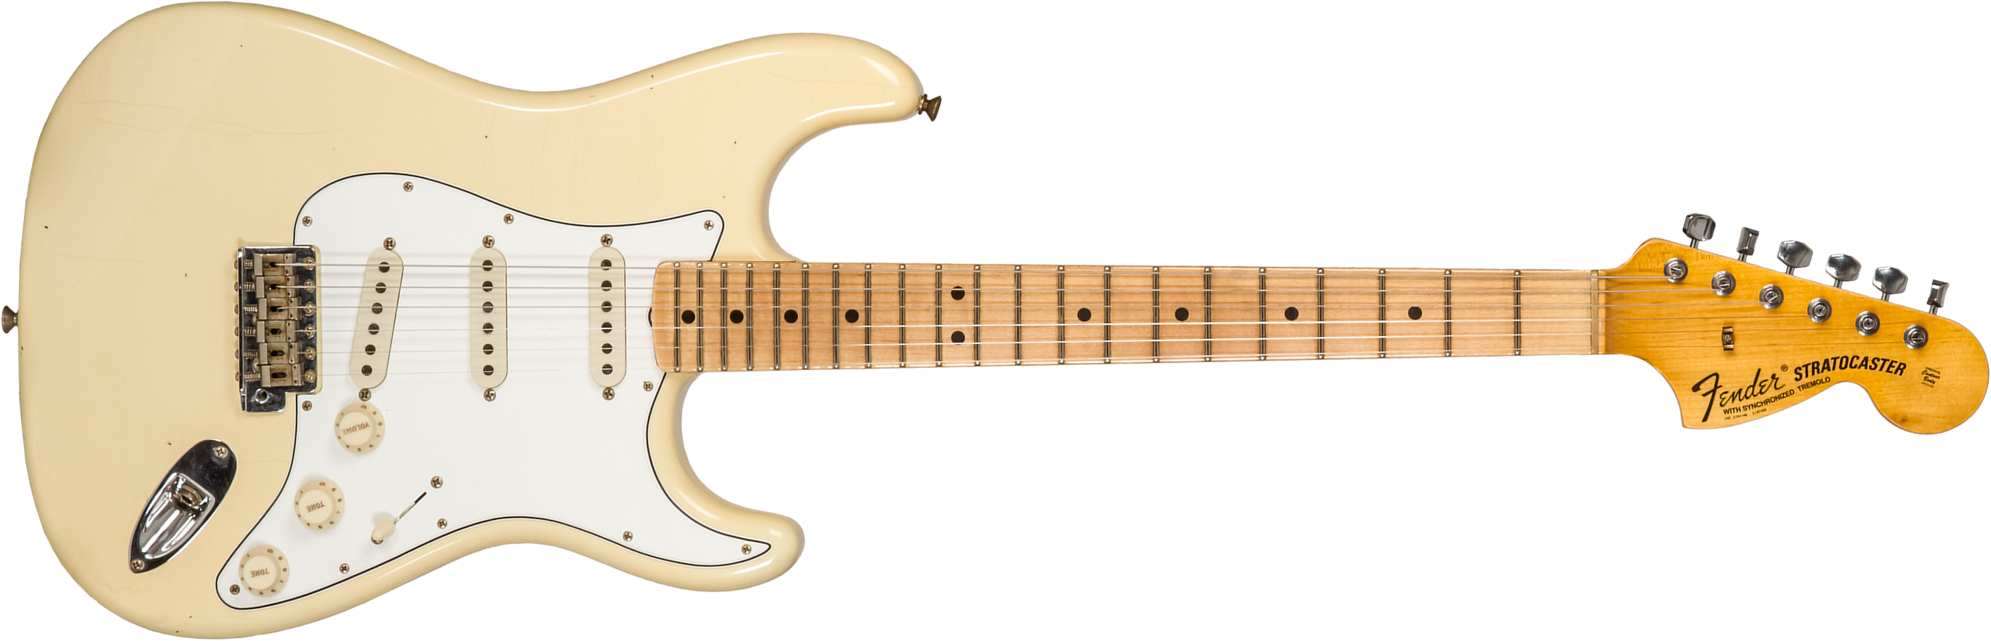 Fender Custom Shop Strat 1969 3s Trem Mn #cz576216 - Journeyman Relic Aged Vintage White - Guitarra eléctrica con forma de str. - Main picture